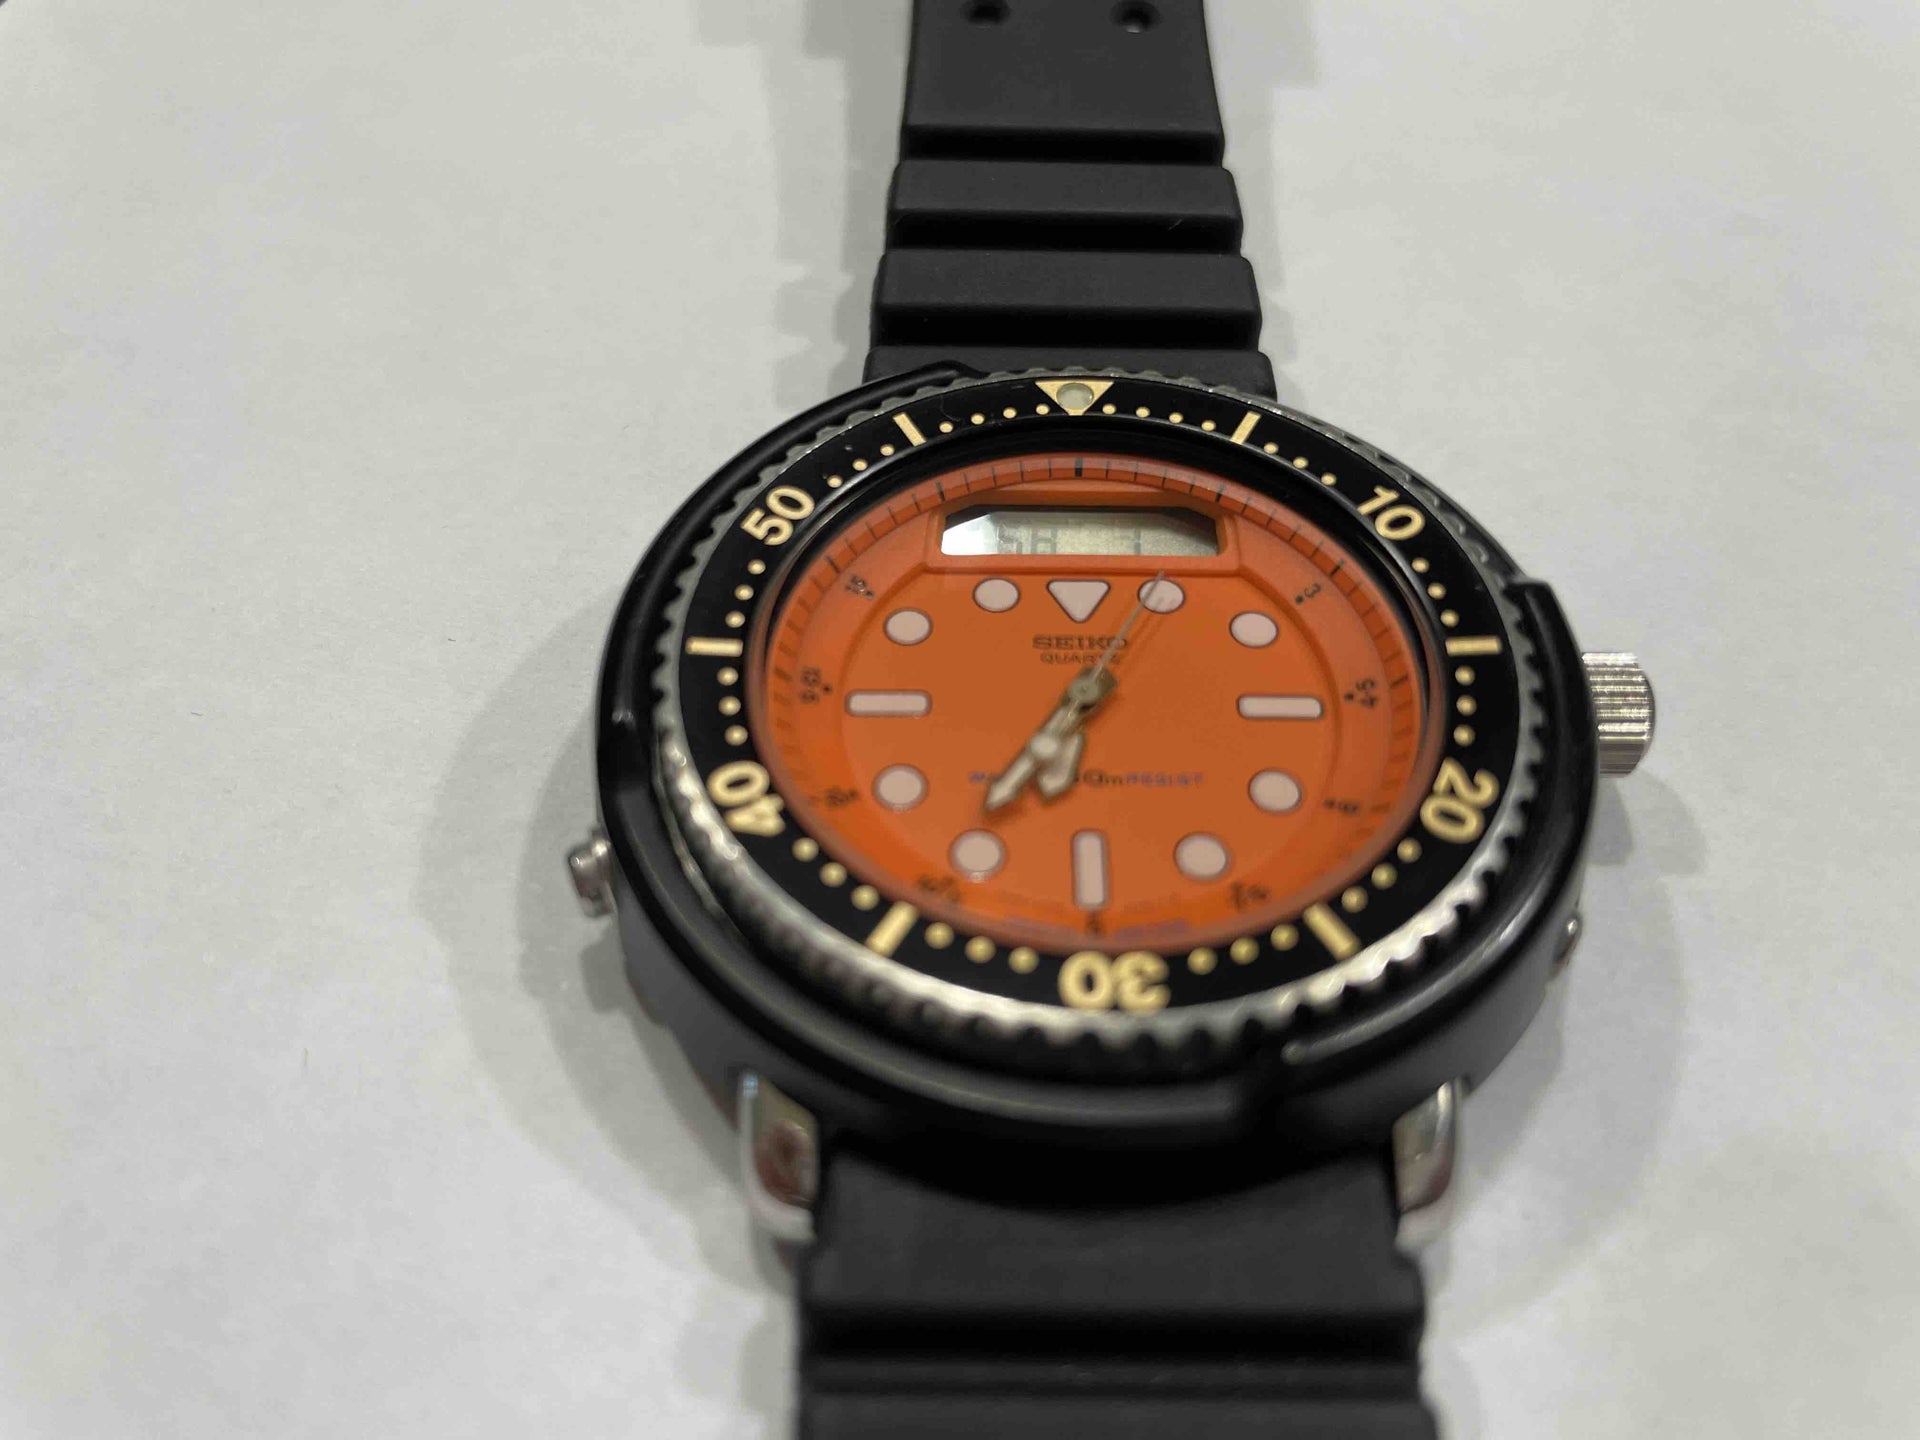 Seiko H558-500A Orange Arnie | The Watch Site